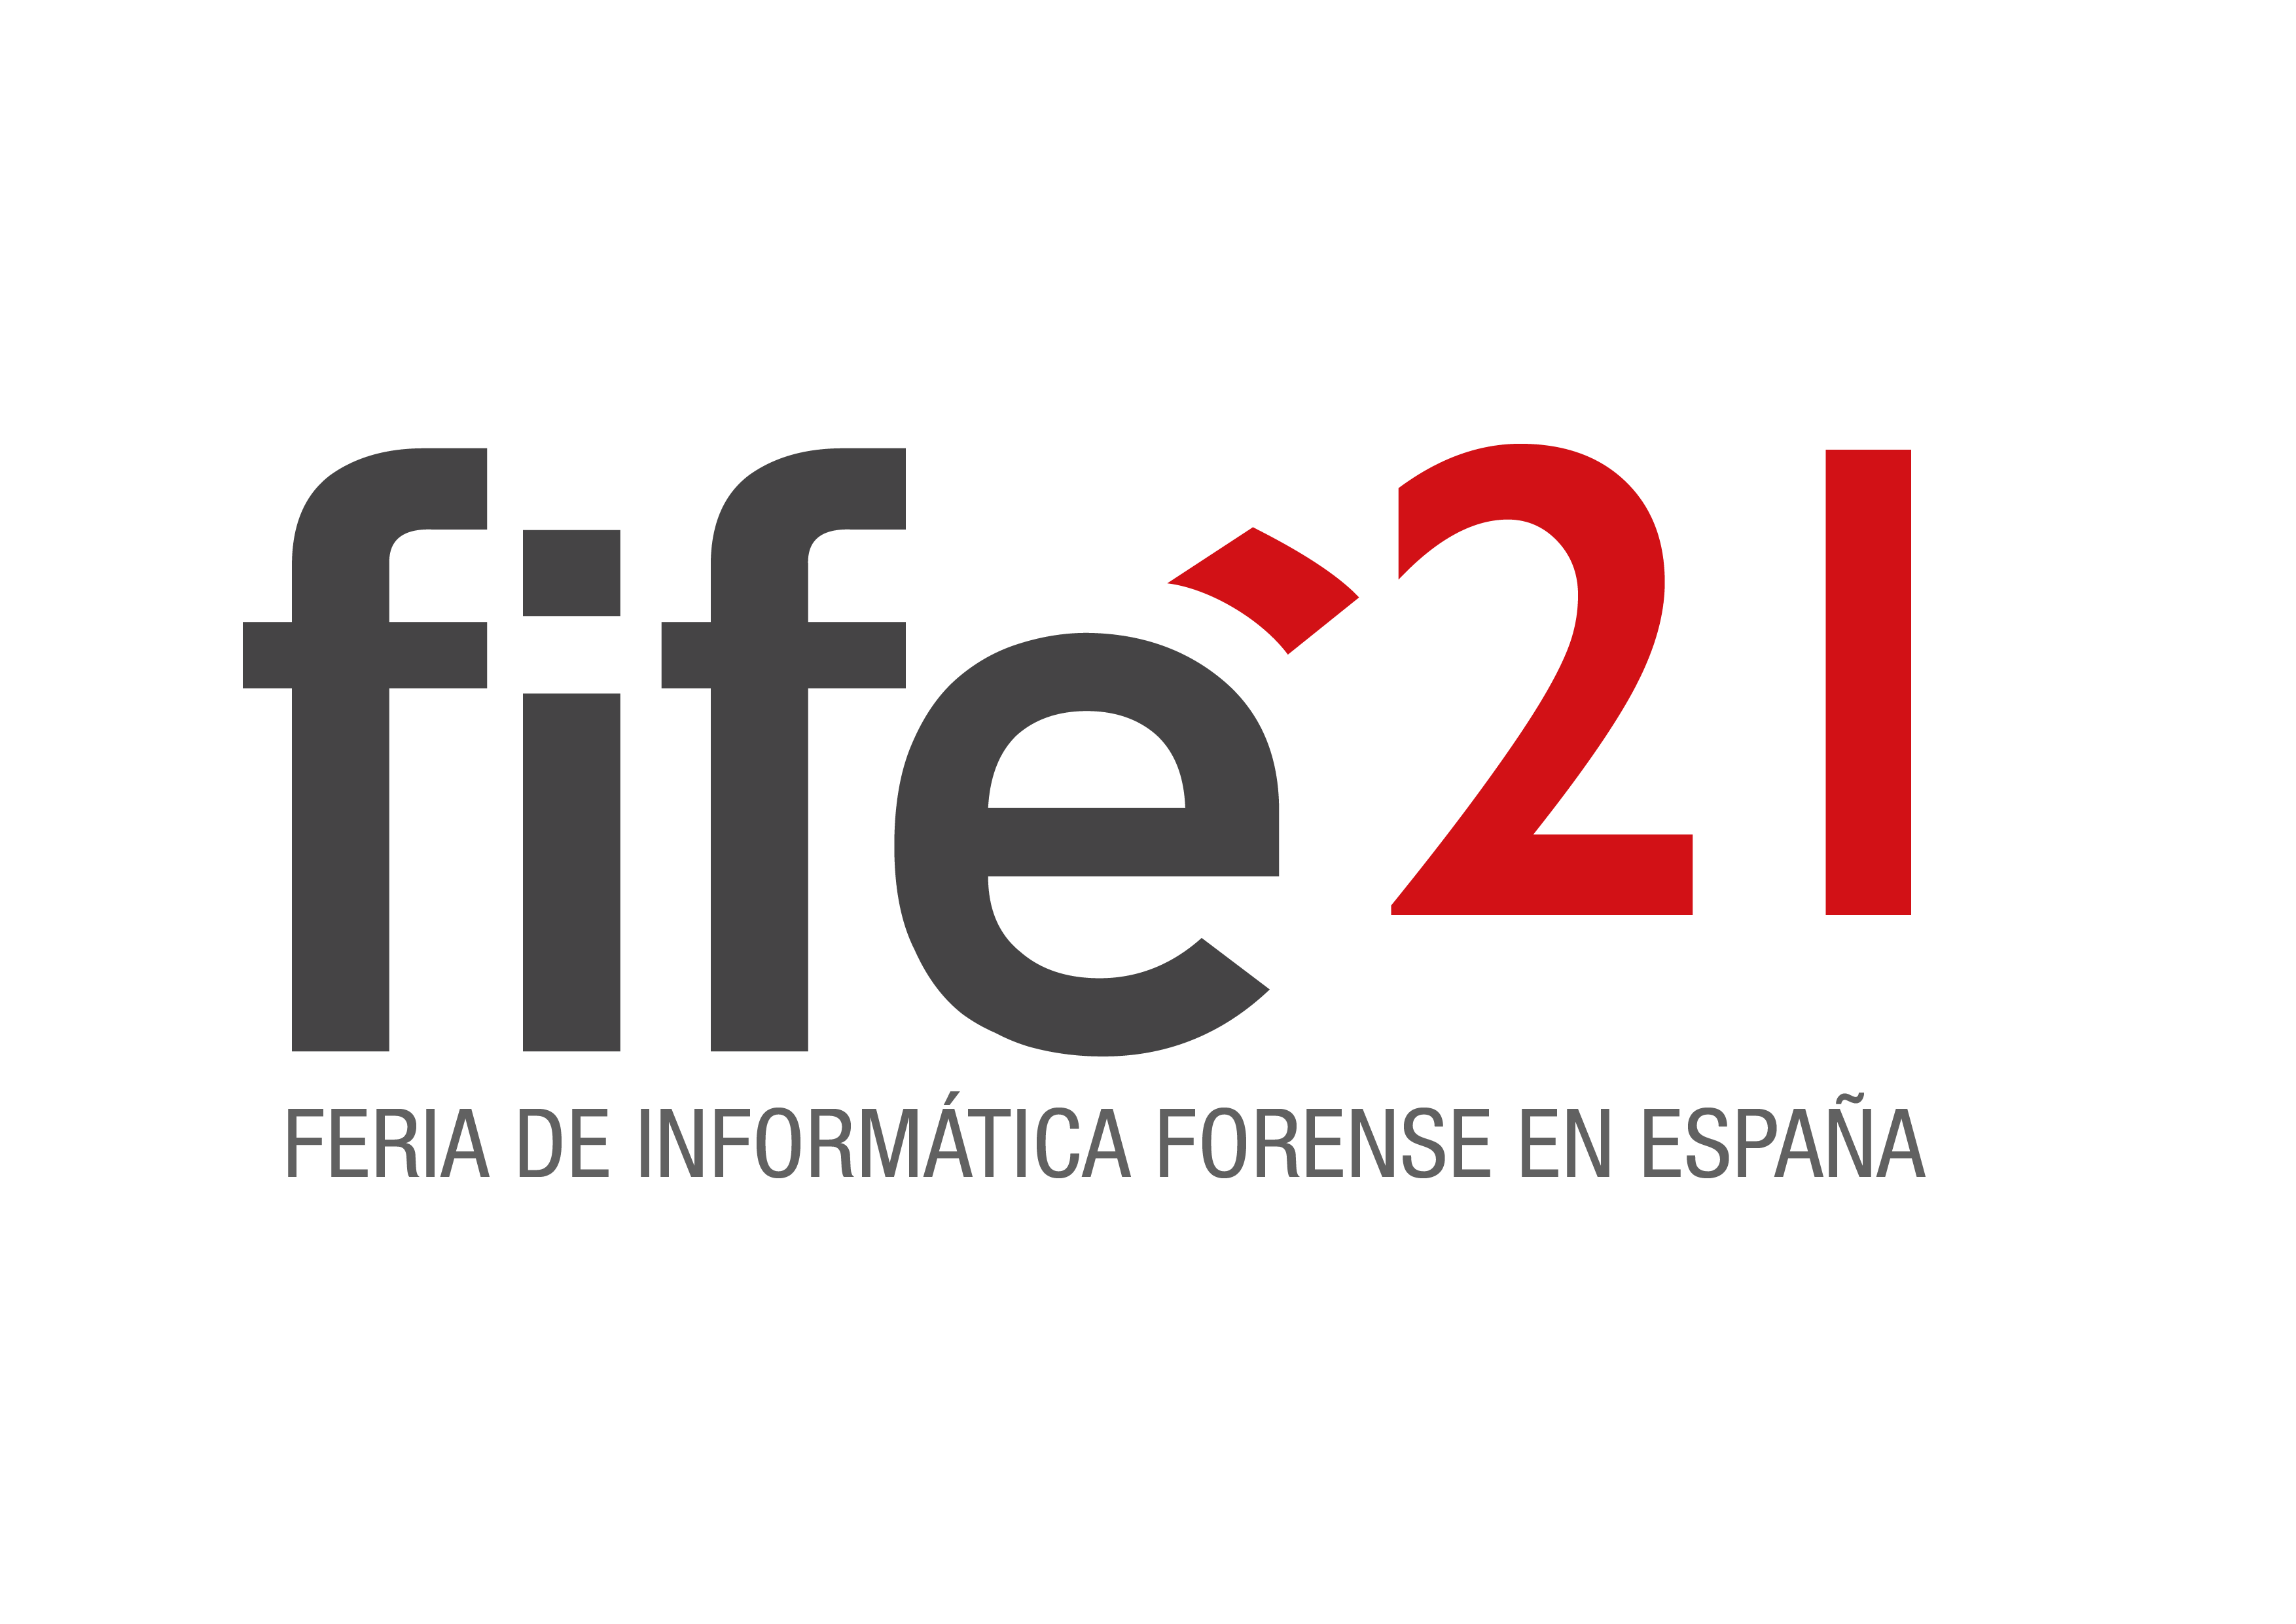 Feria de Informática Forense en España (FiFE´21)